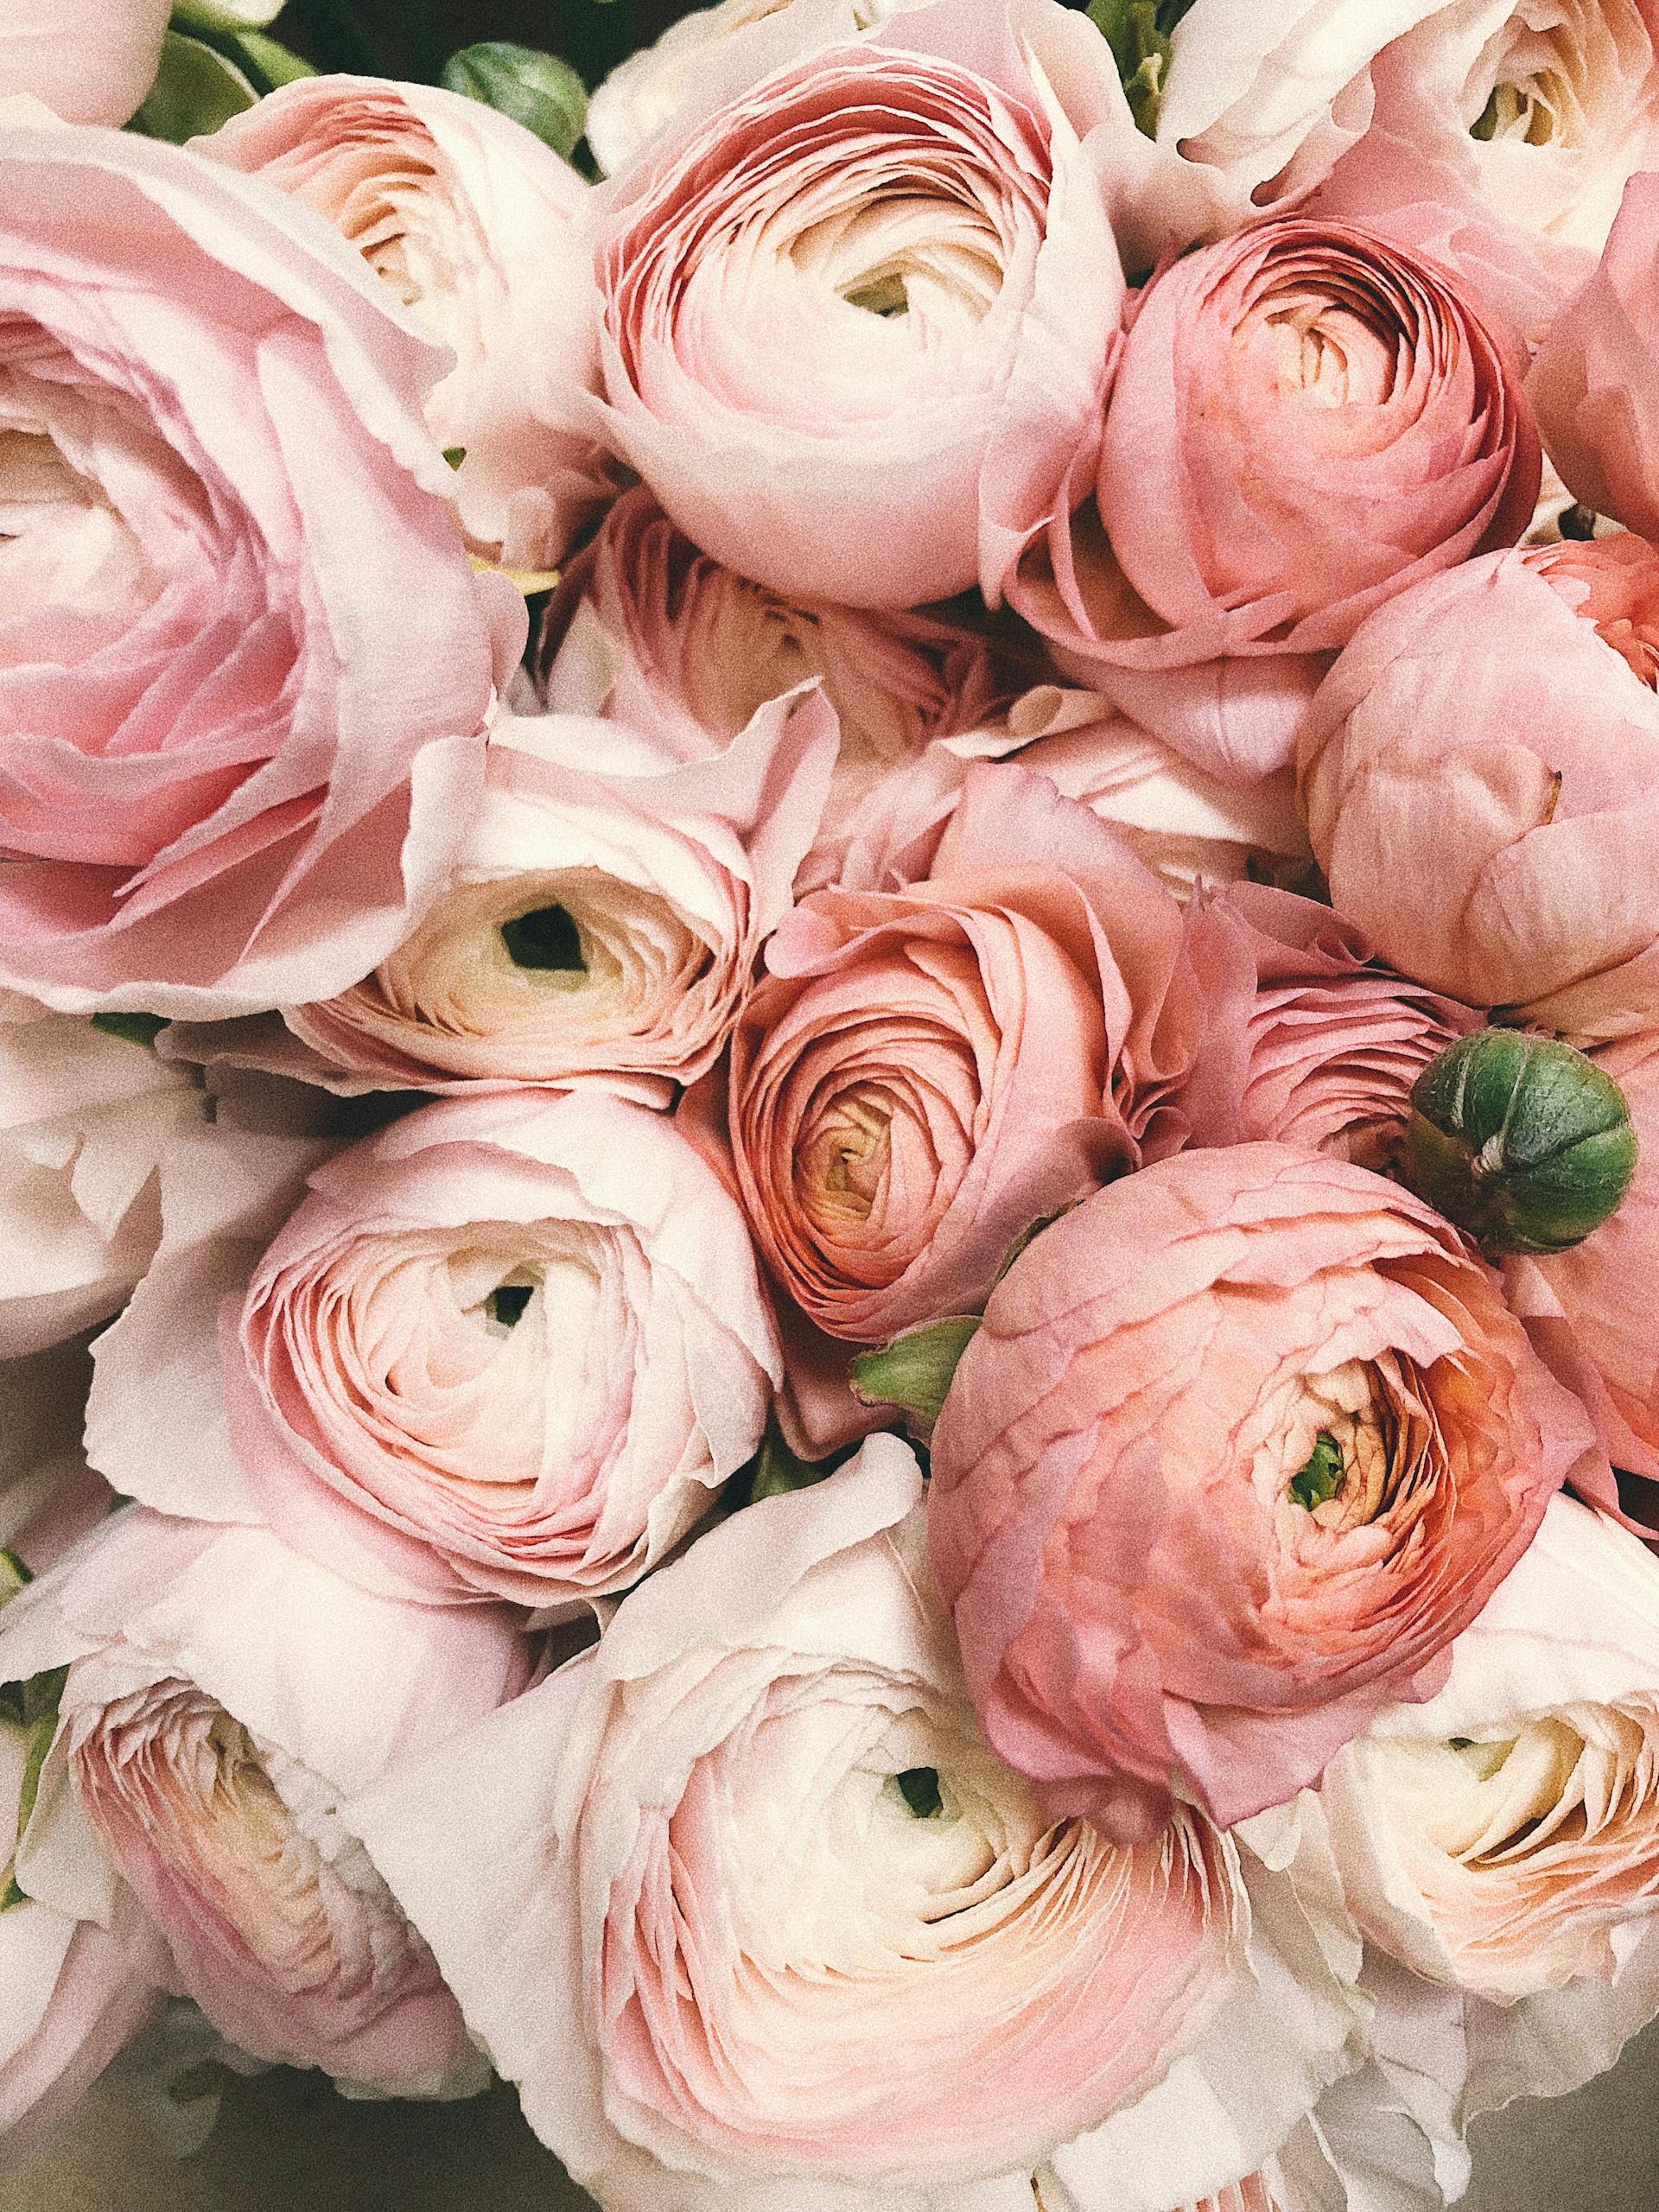 Un bouquet de pivoines roses | Source : Pexels